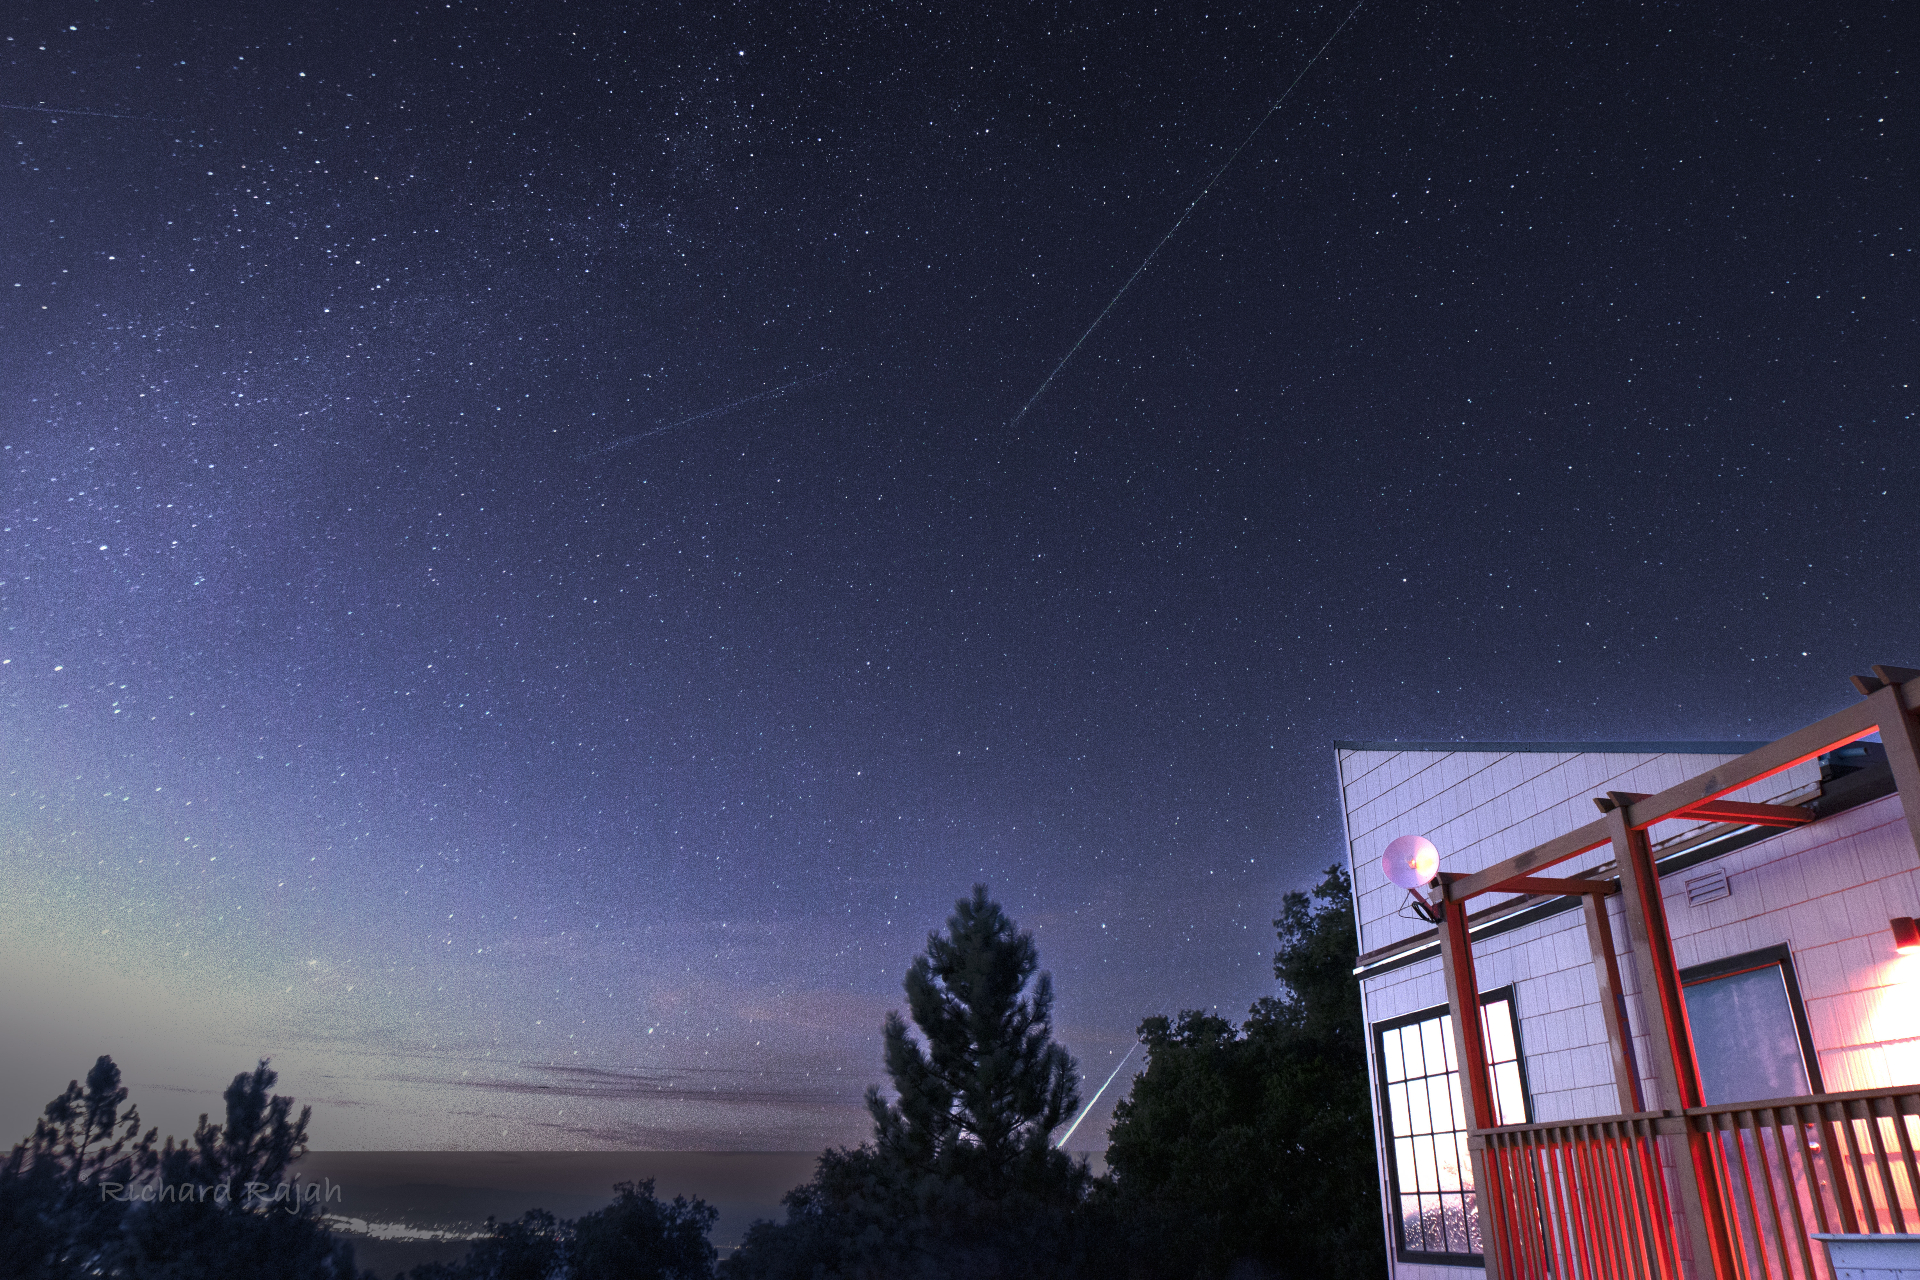 Meteorlar gökyüzünde hızla ilerliyor ve görüntünün alt kısmında ağaçların arkasında parlak bir ateş topu çiziliyor.  Fotoğrafın sağında ışıklı bir bina var.